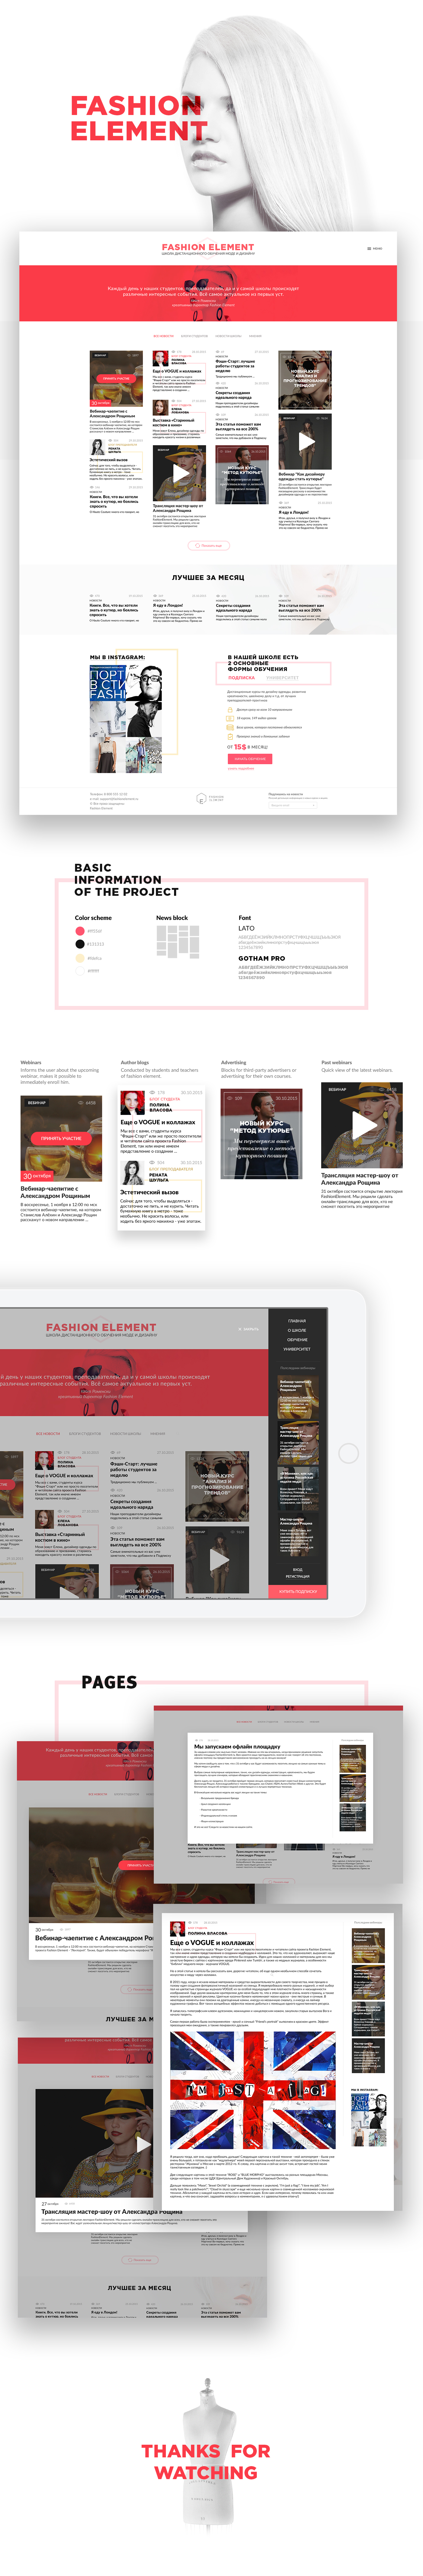 UI ux Web site design fashionelement element clean news Style vogue